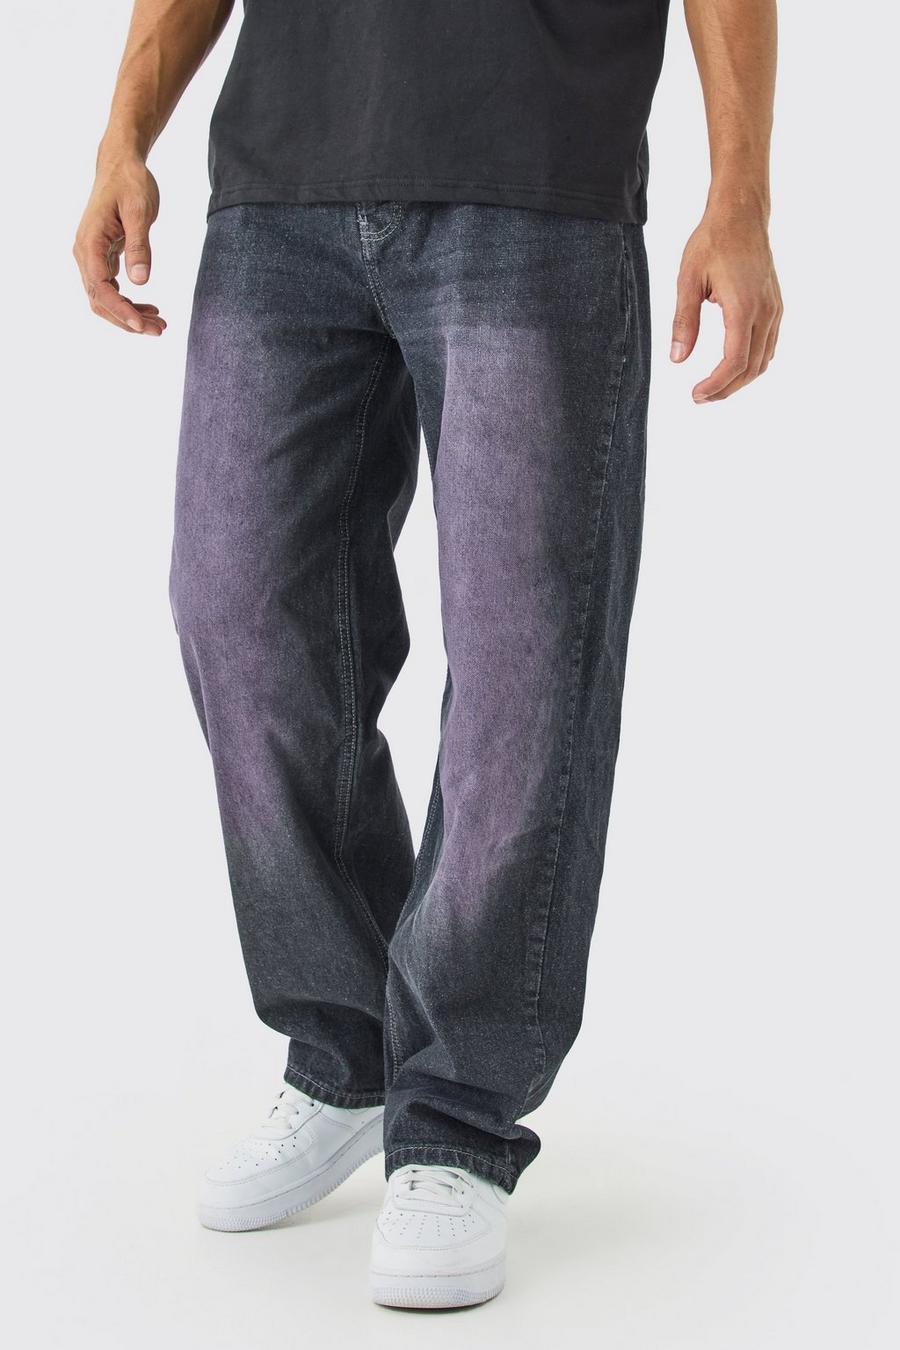 Lockere Jeans in Grau, Grey